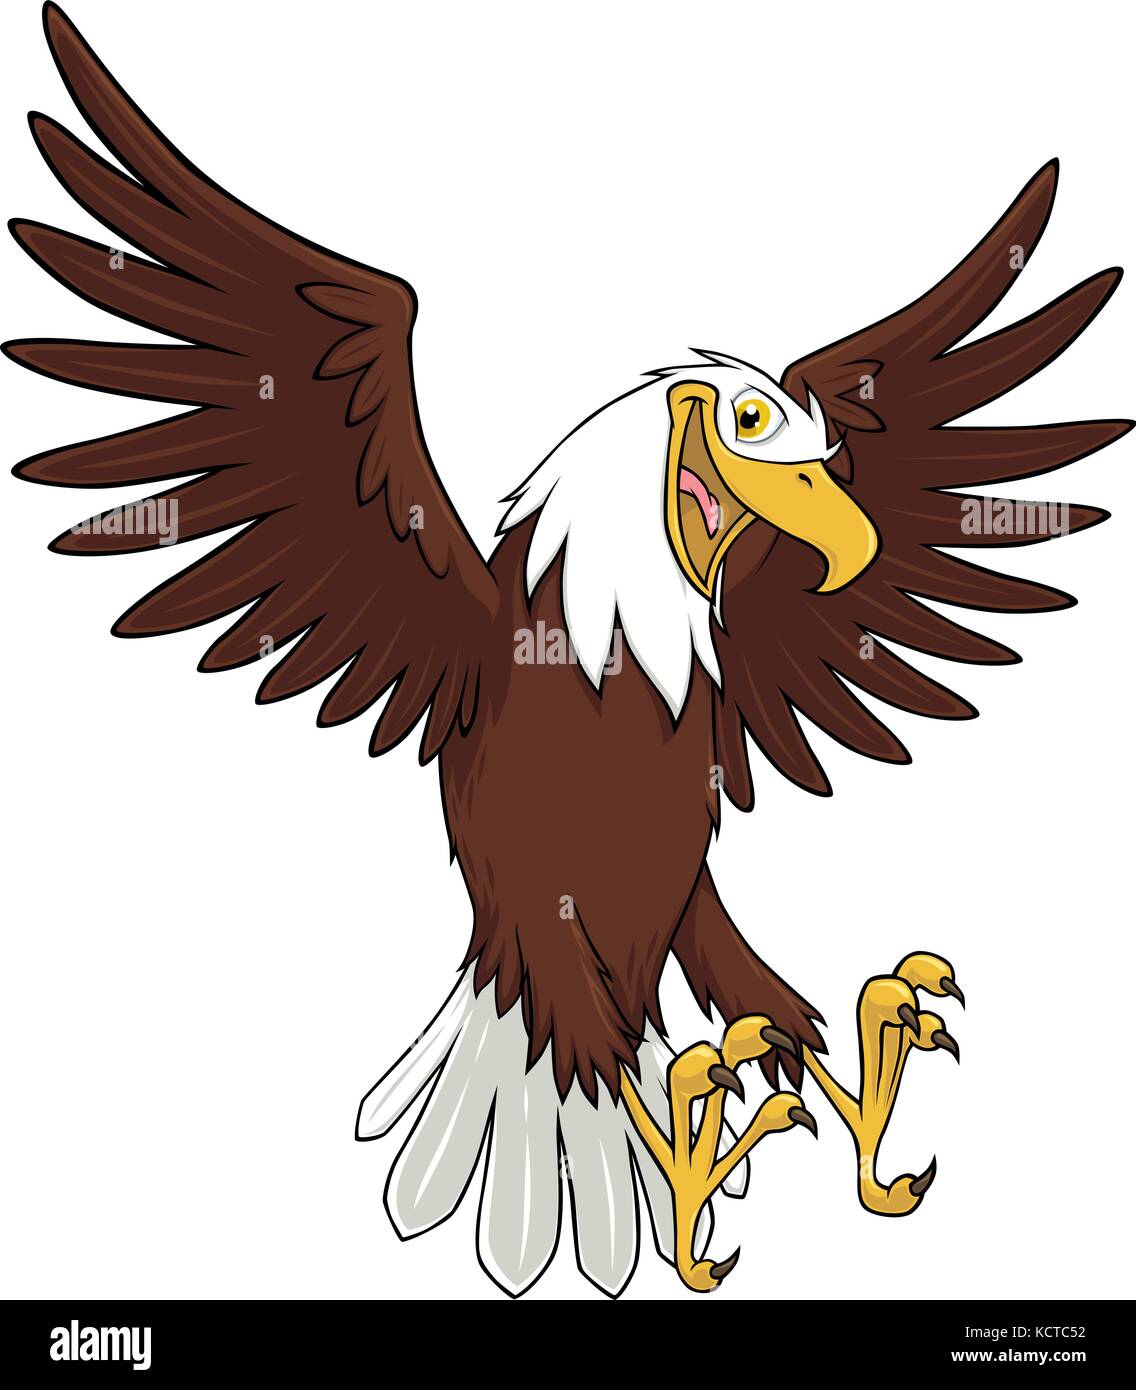 Vector cartoon of a bald eagle Stock Vector Image & Art - Alamy